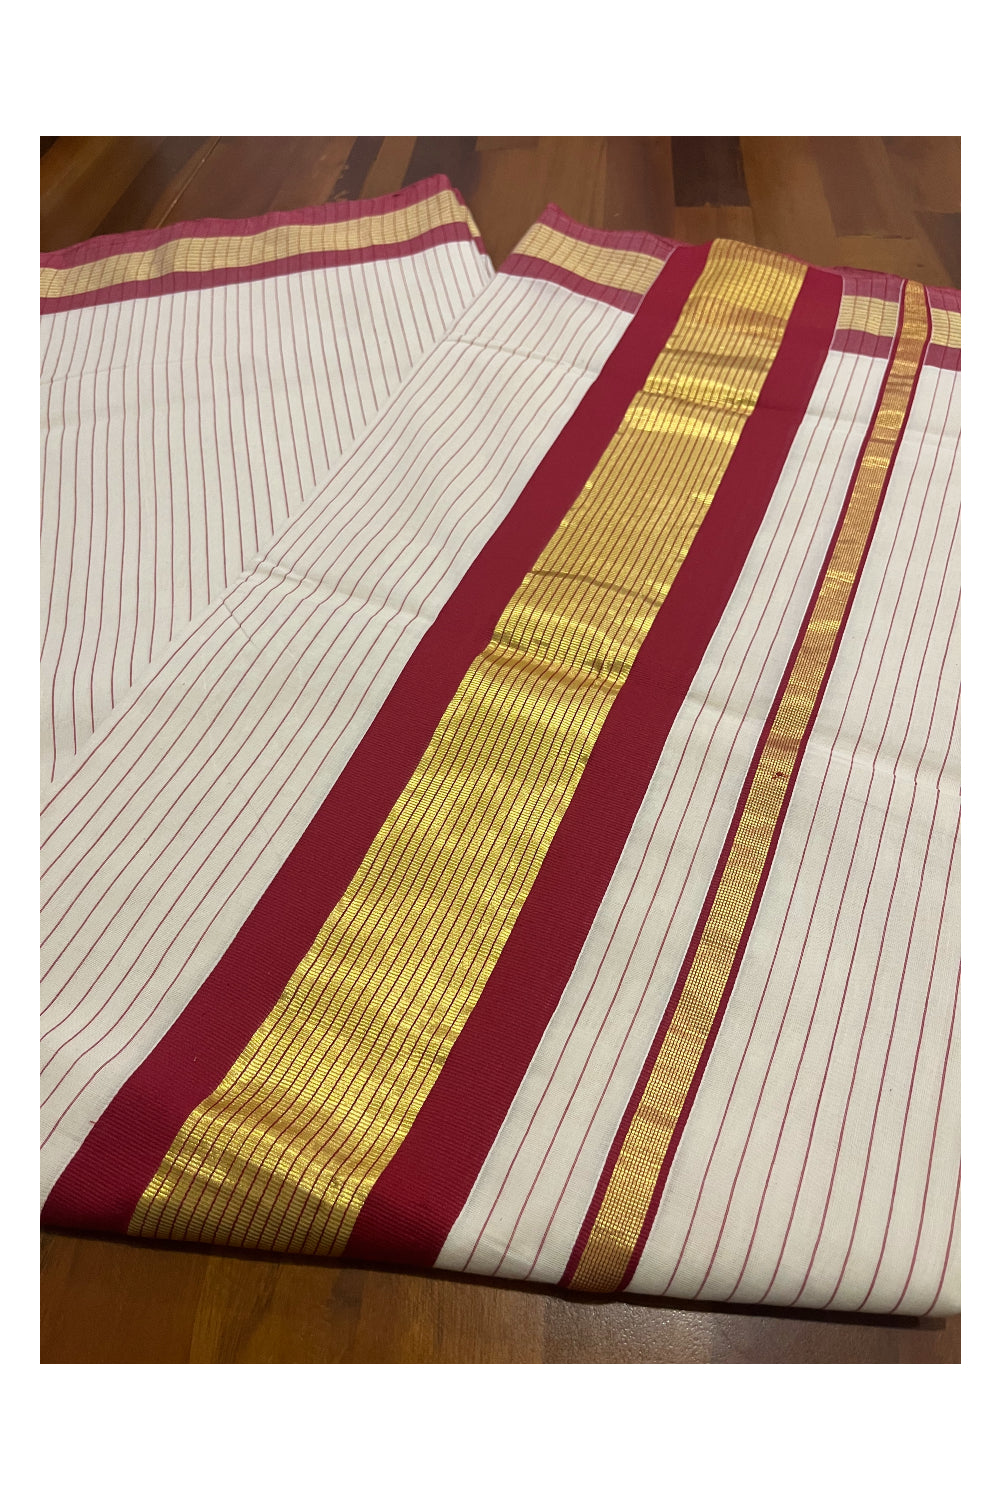 Southloom Premium Unakkupaavu Handloom Cotton Saree with Maroon and Kasavu Lines Designs on Pallu